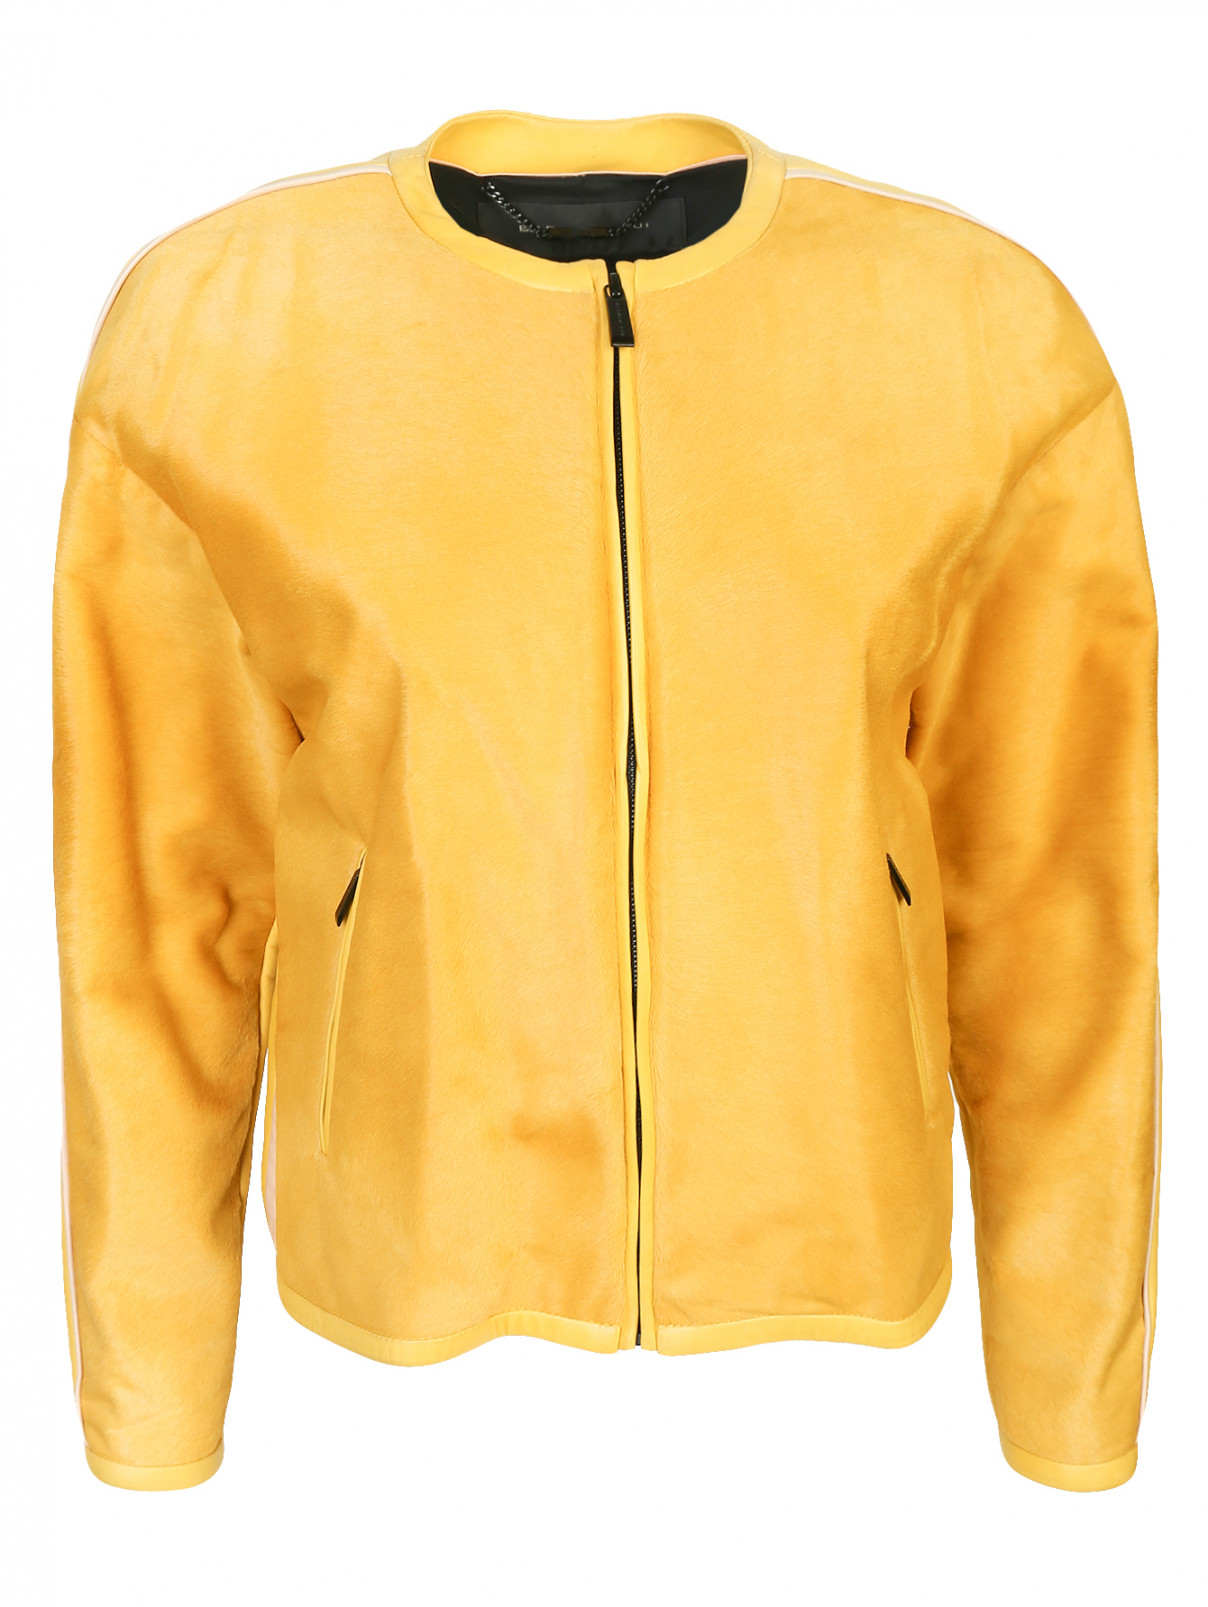 Куртка из кожи и меха на молнии Barbara Bui  –  Общий вид  – Цвет:  Желтый